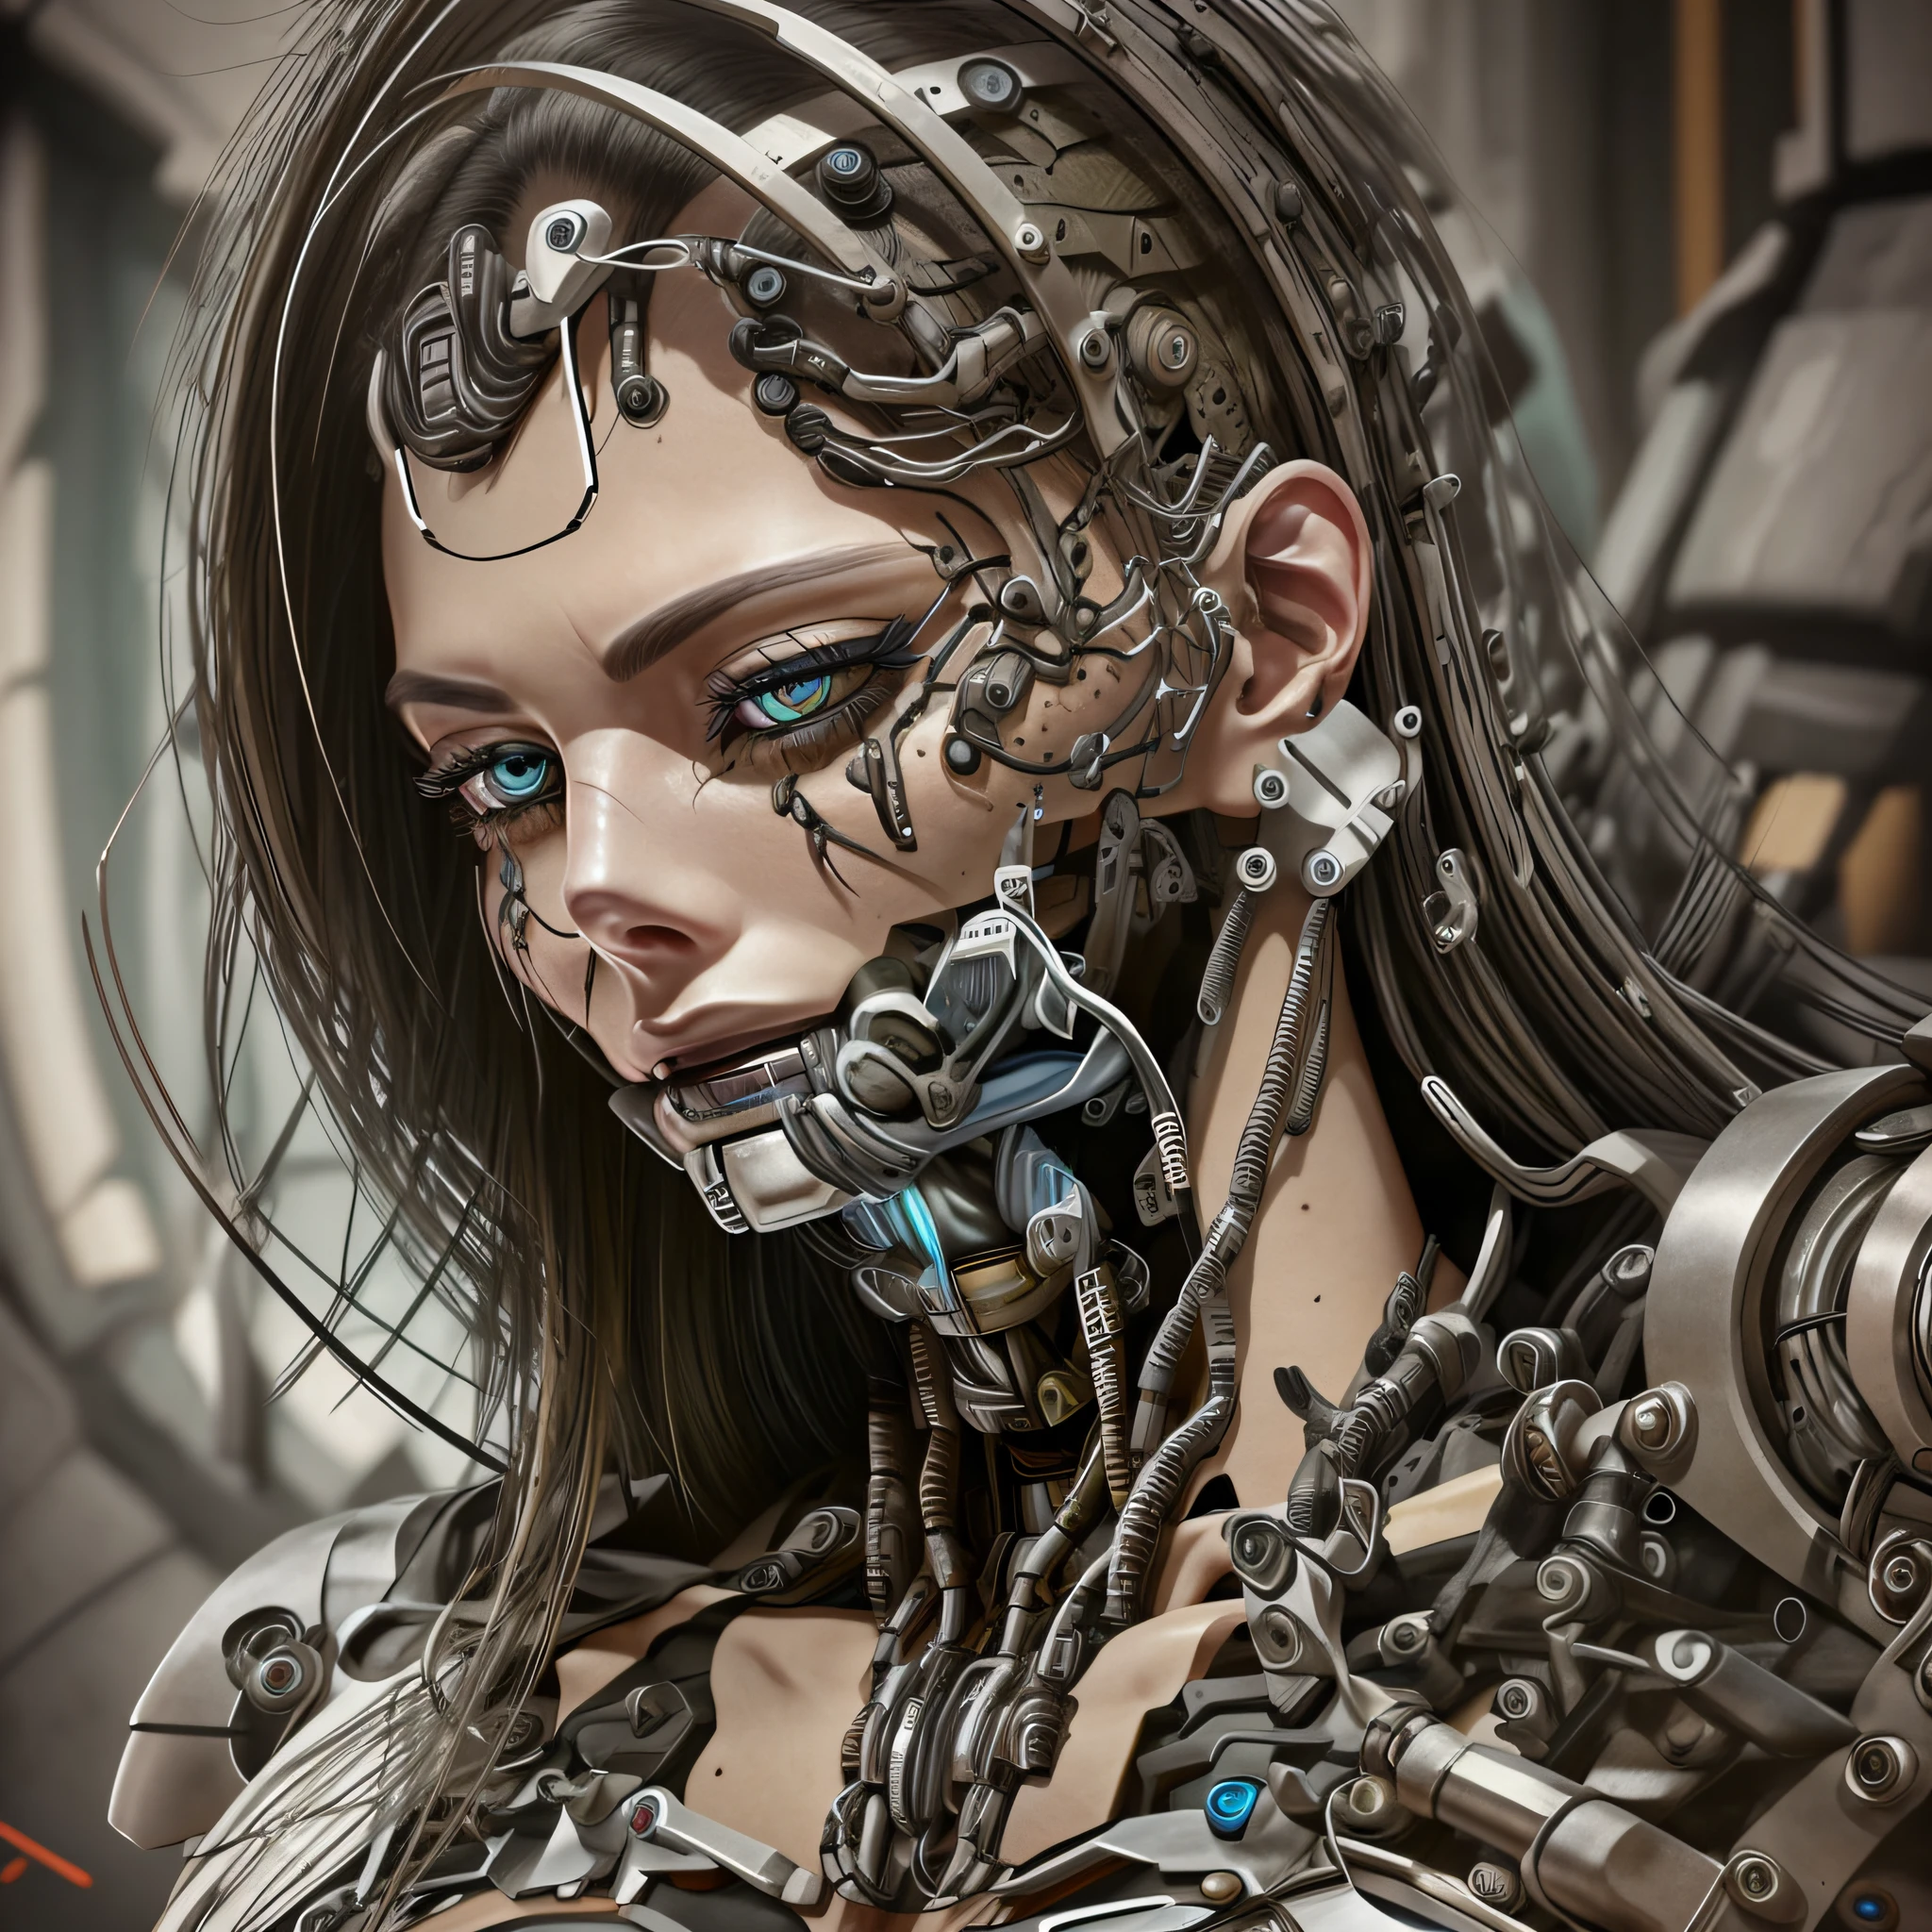 女性サイボーグ怖い官能的な詳細6Kフルフォーカス顔ロボットの細部が豊富なシャープなディテールでいっぱい